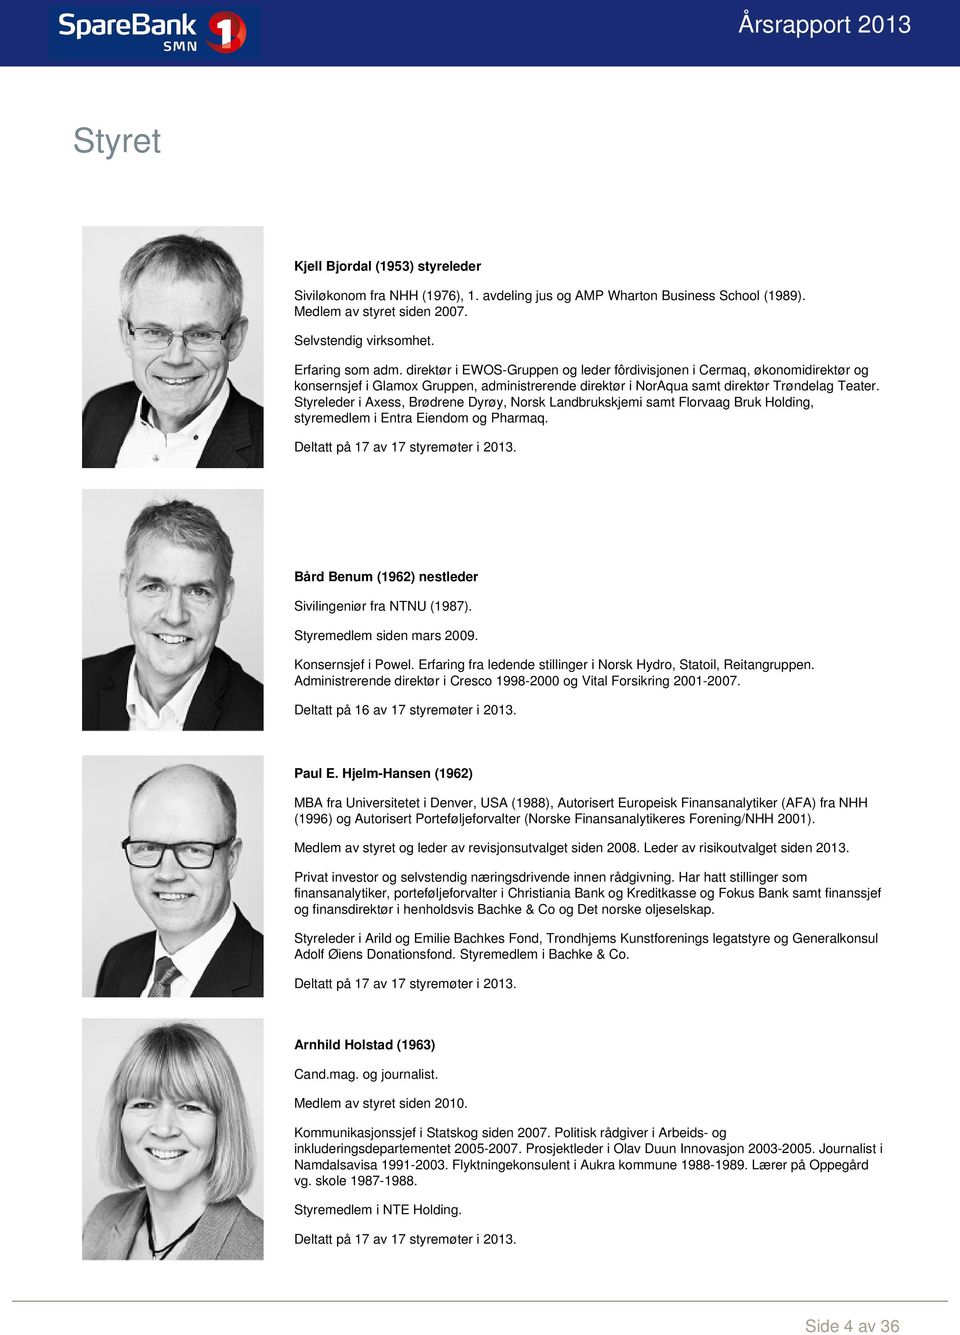 Styreleder i Axess, Brødrene Dyrøy, Norsk Landbrukskjemi samt Florvaag Bruk Holding, styremedlem i Entra Eiendom og Pharmaq. Deltatt på 17 av 17 styremøter i 2013.